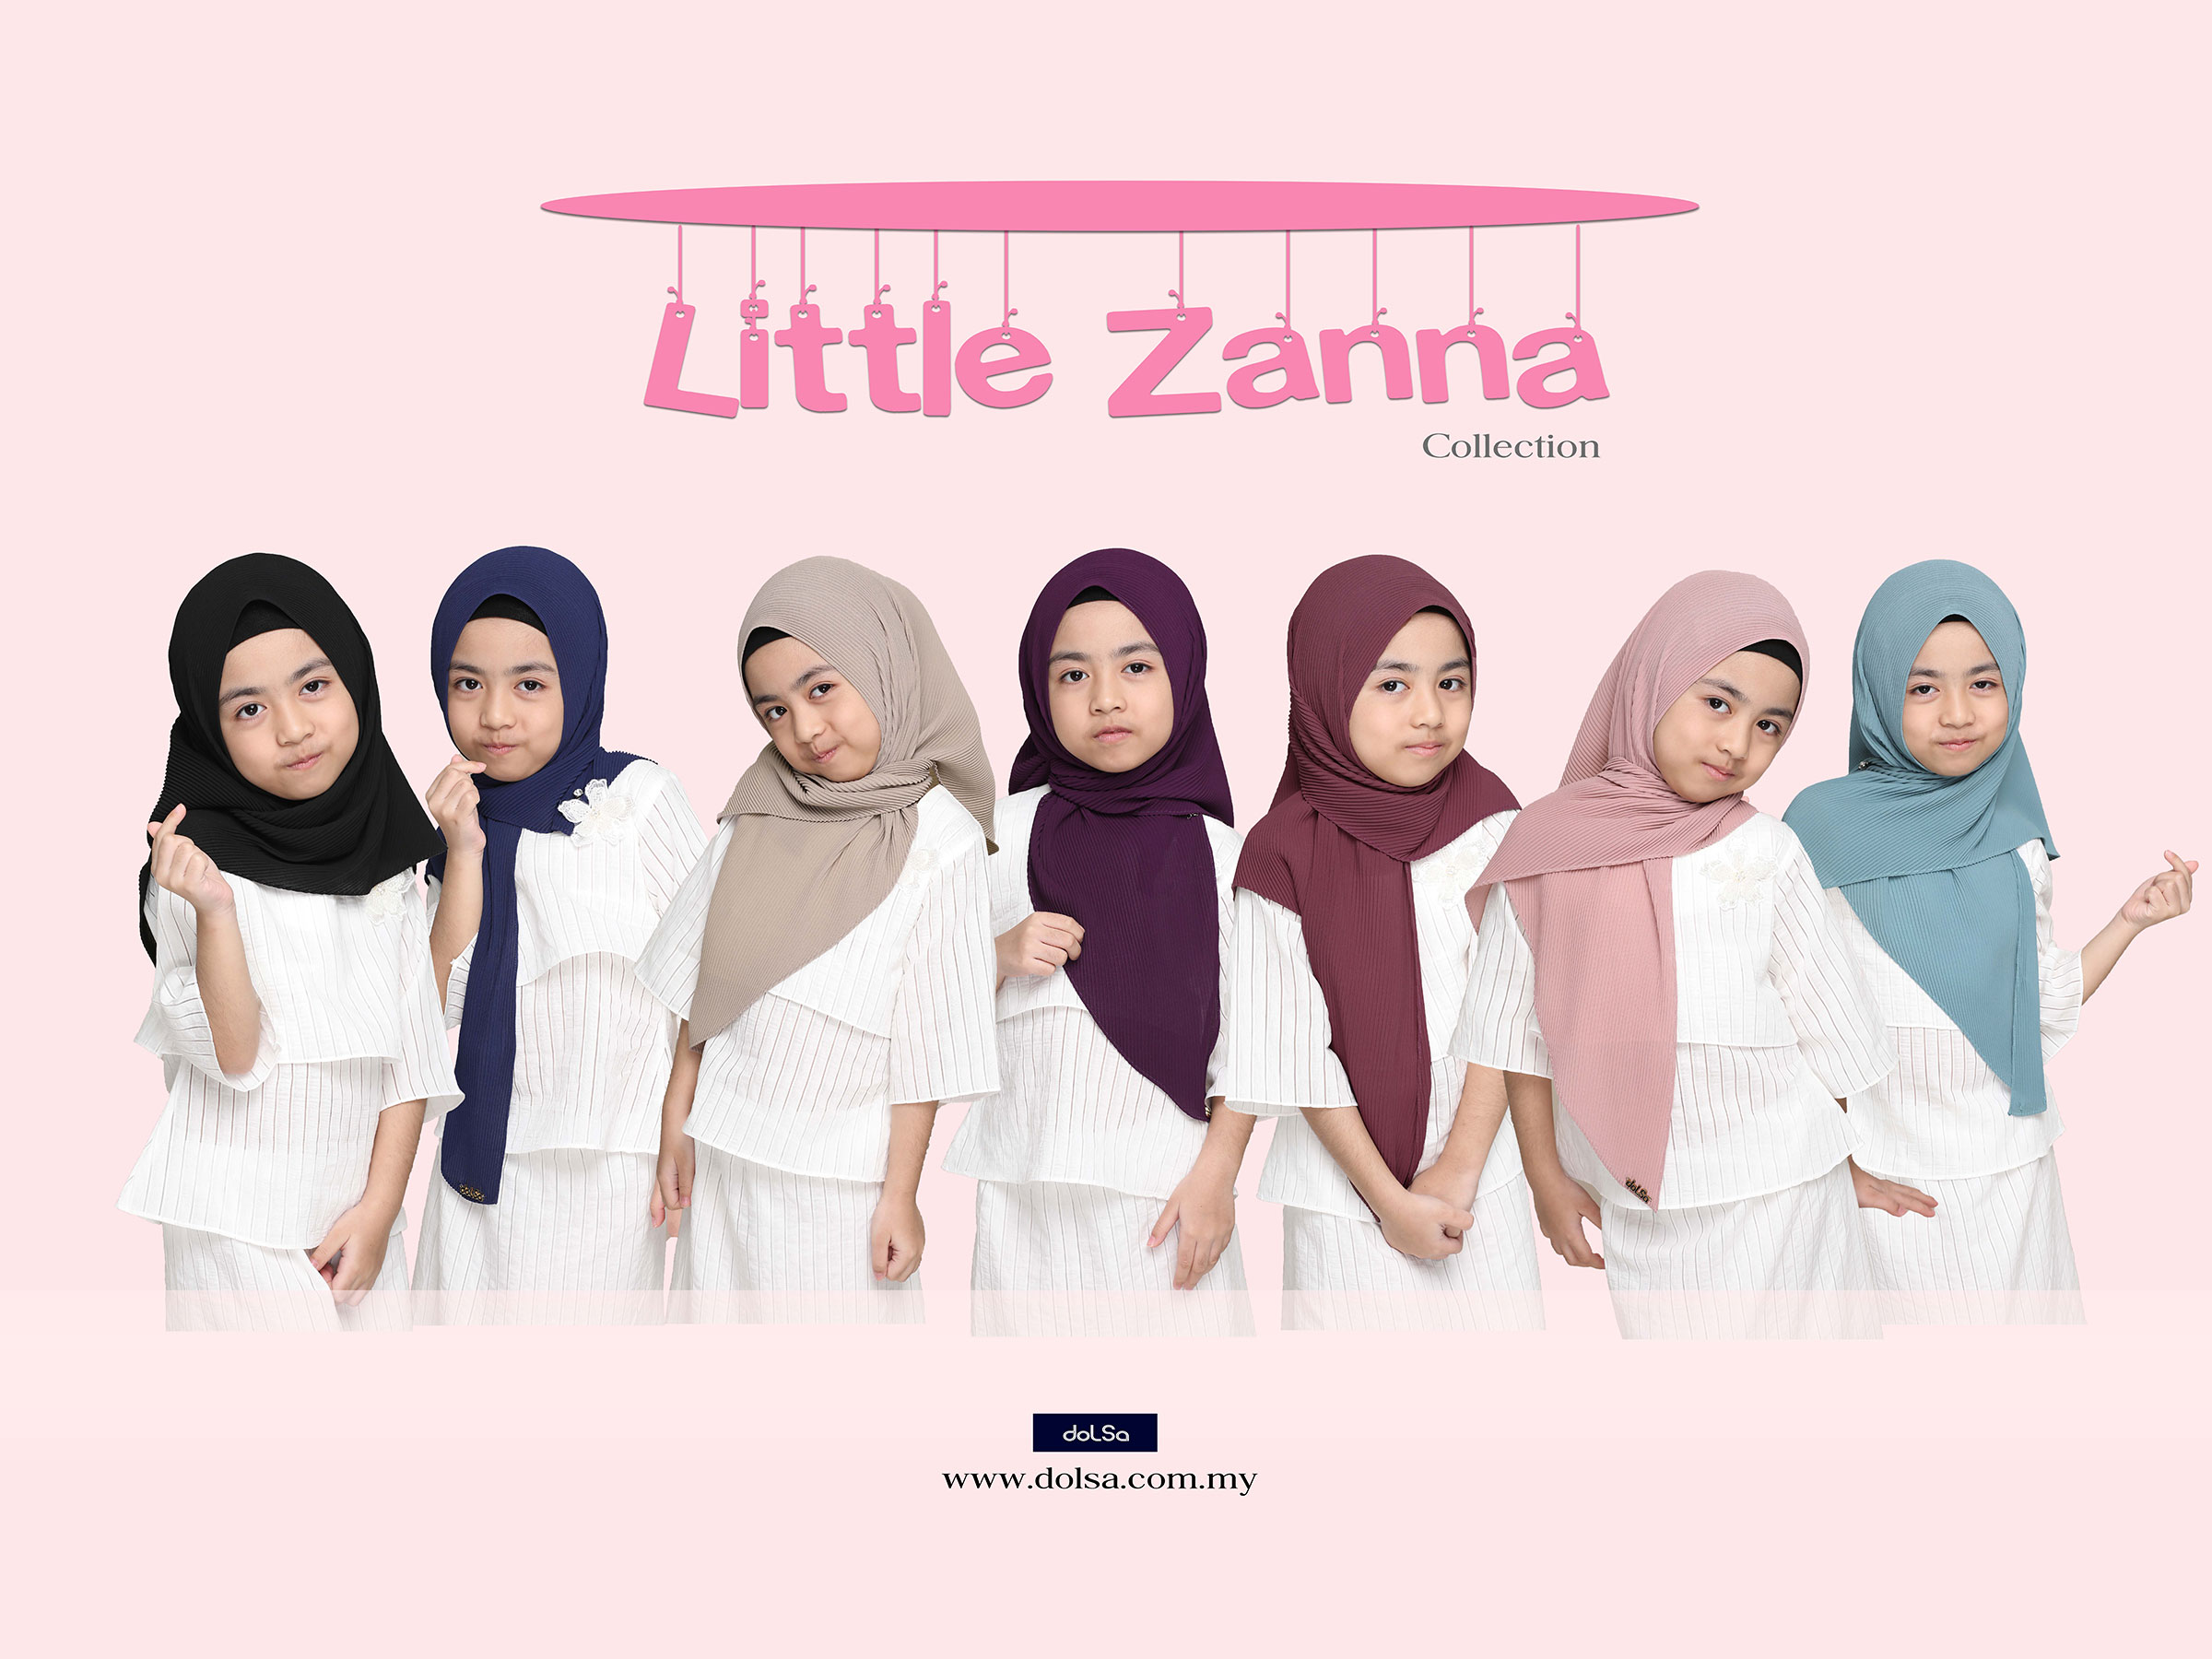 Lil zanna new colors